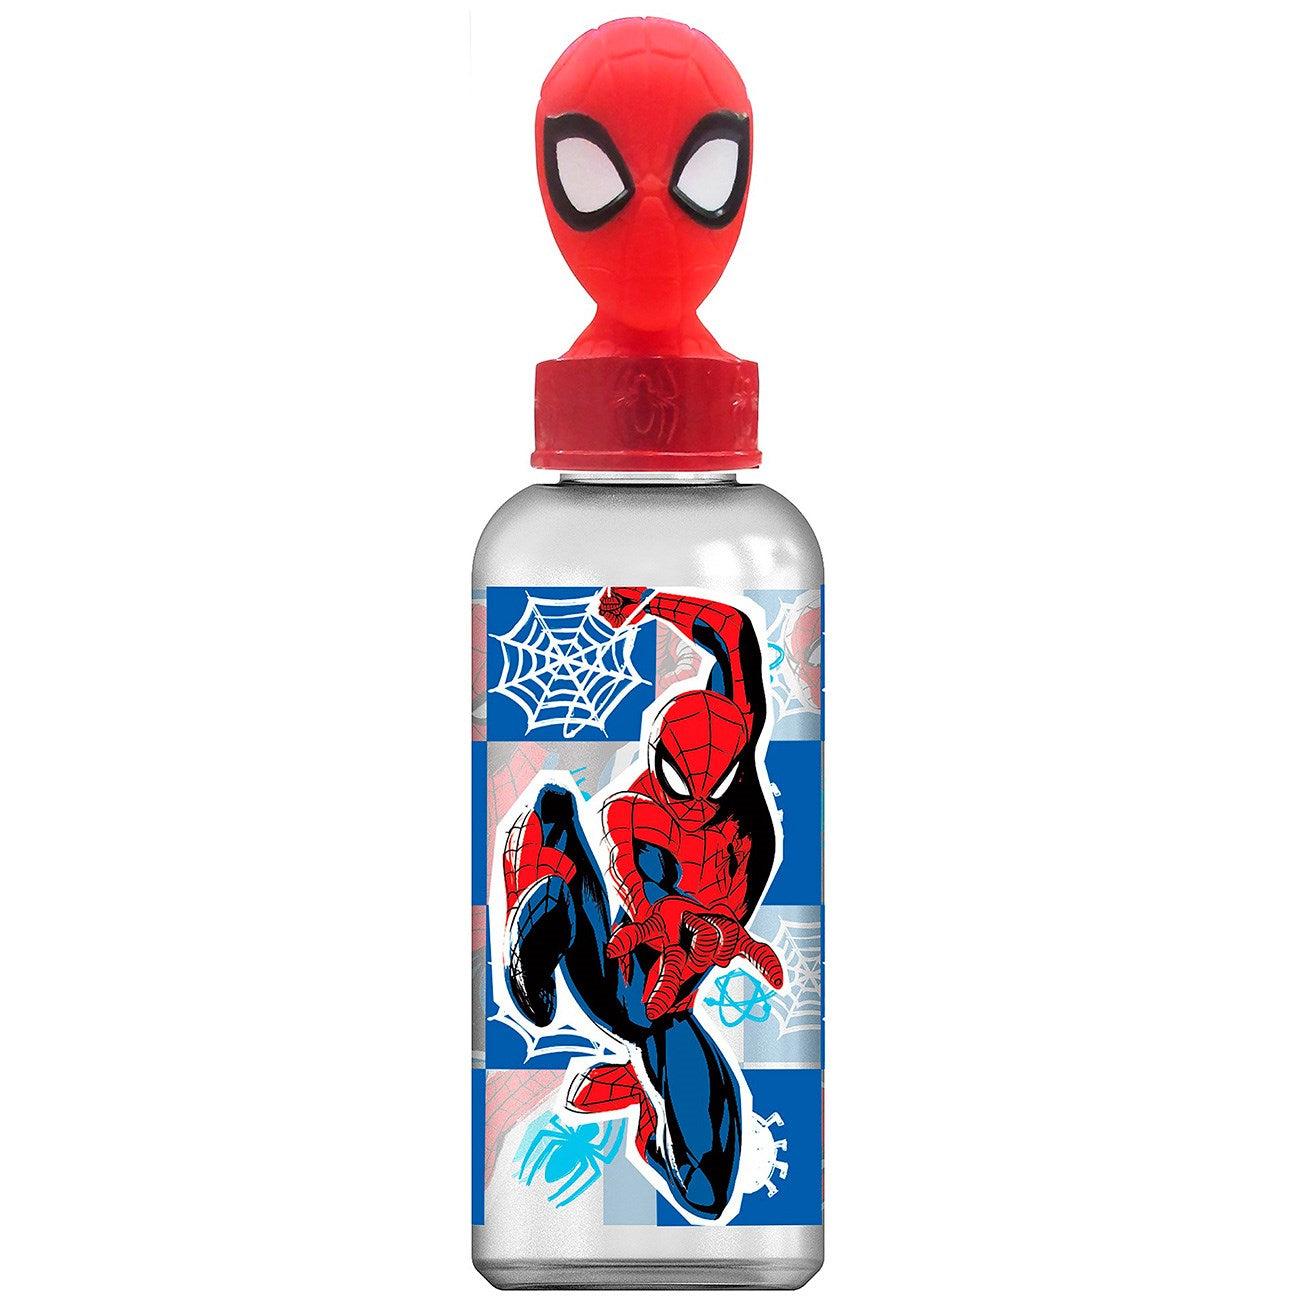 Euromic Spiderman vattenflaska med 3D-figur